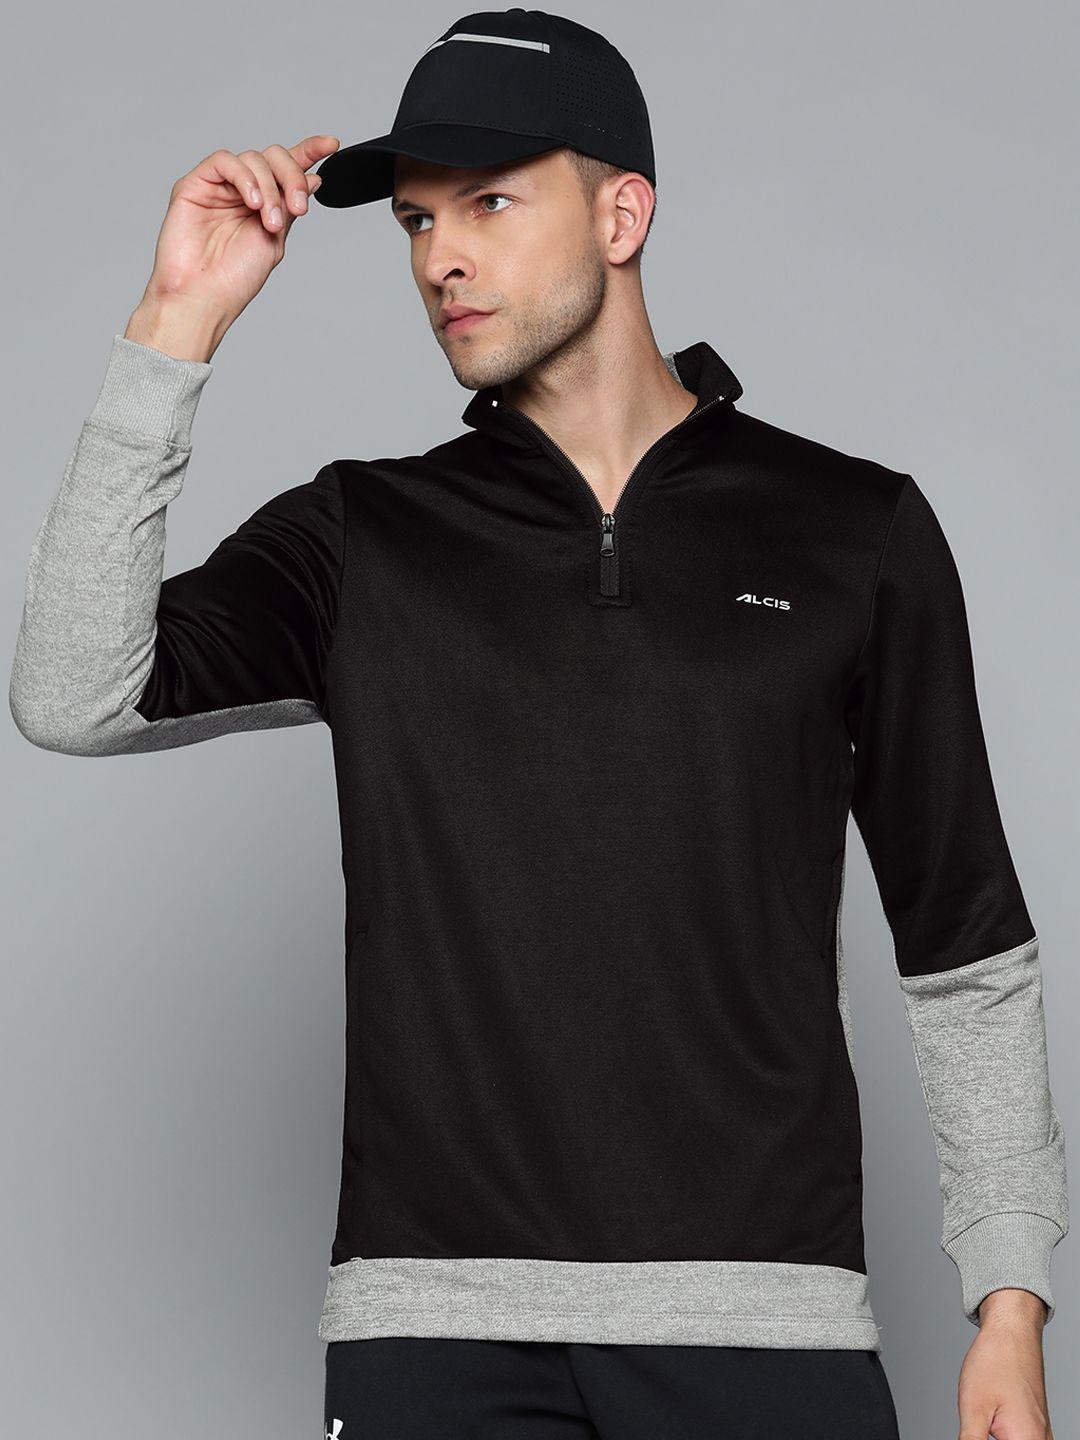 alcis-men-black-&-grey-colourblocked-sweatshirt